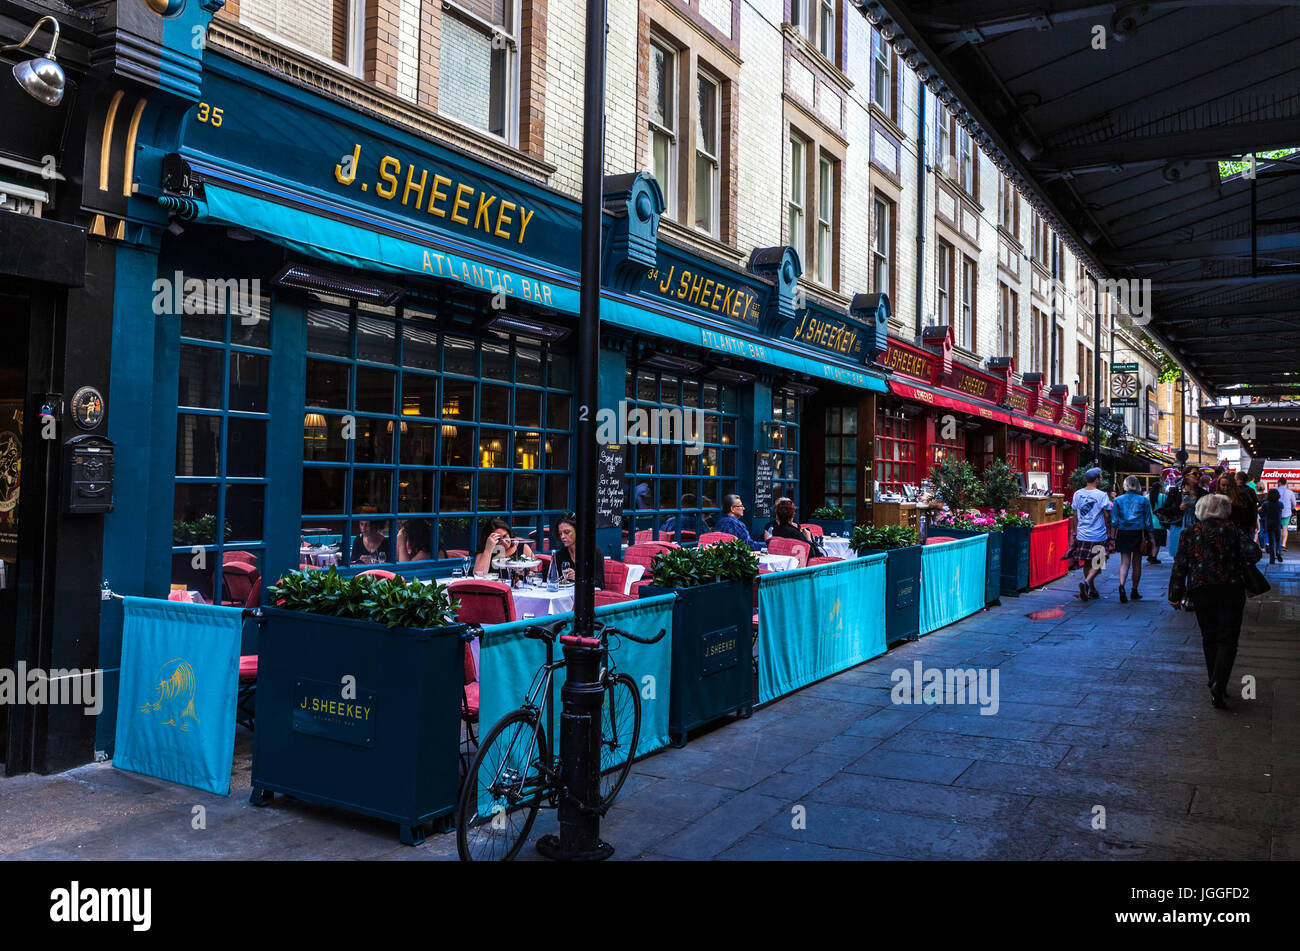 J. Sheekey, fruits de mer terrasse de restaurant sur St Martin's Court, Londres, Angleterre, WC2, au Royaume-Uni. Banque D'Images